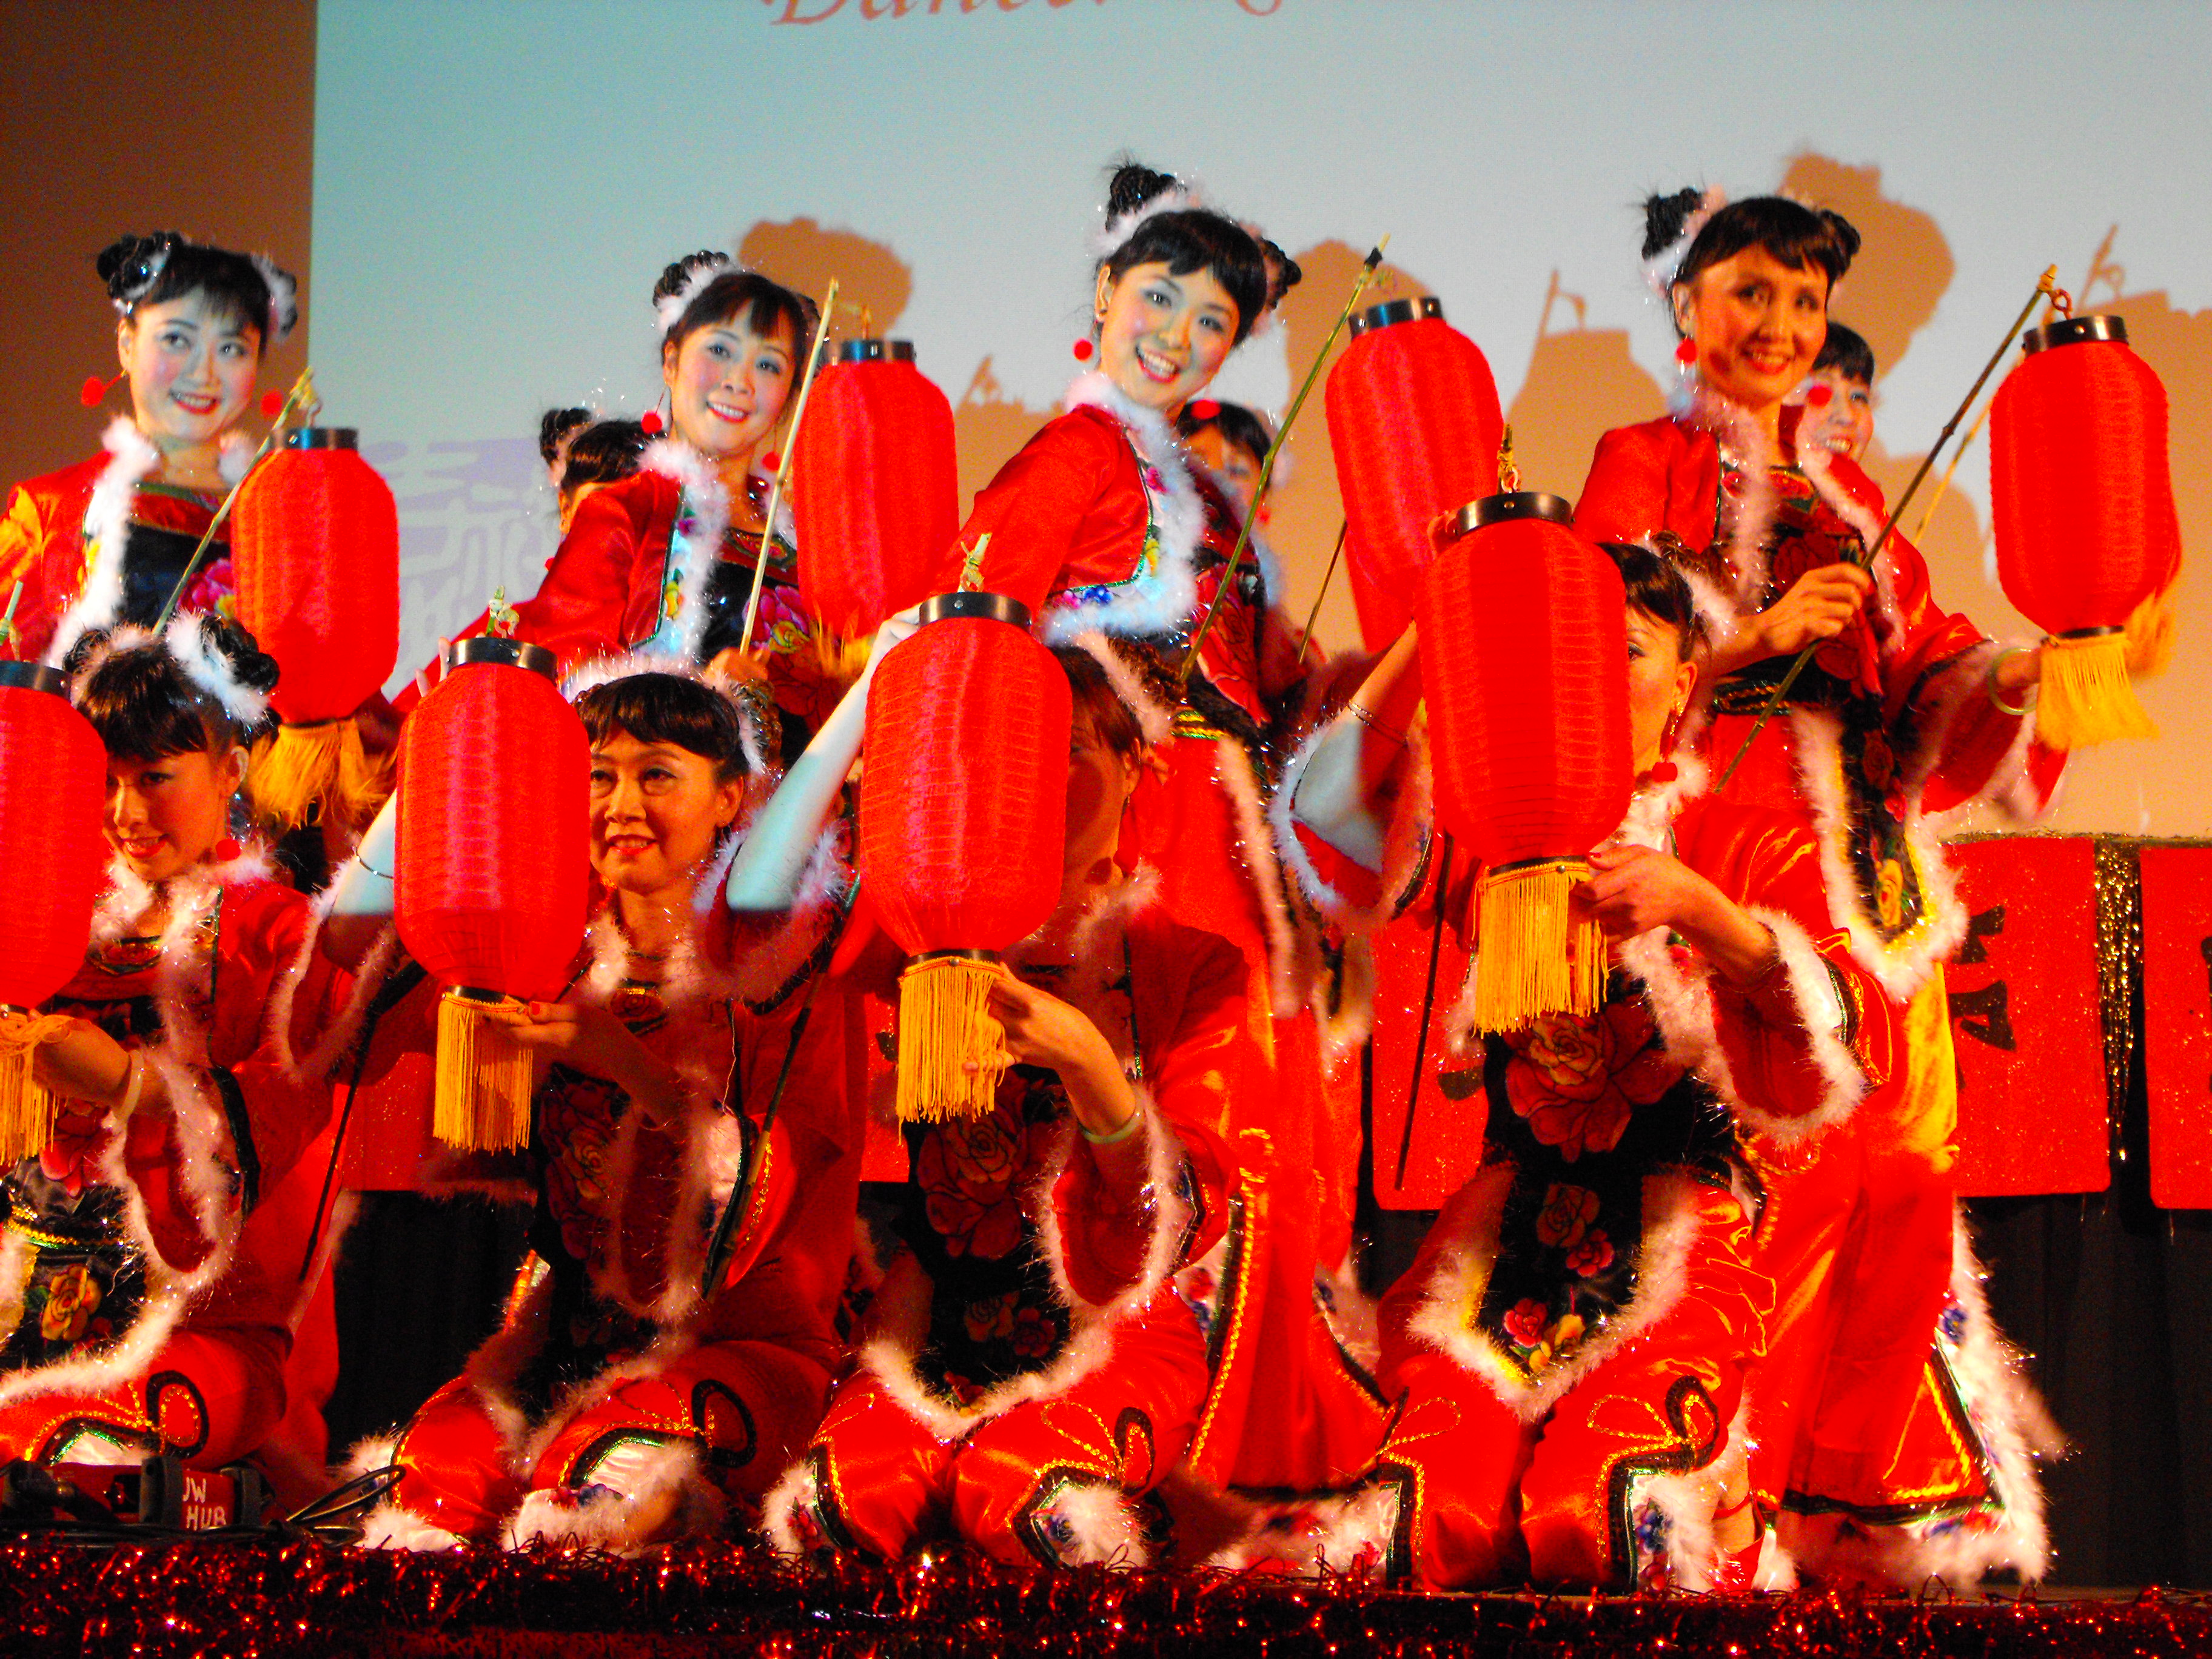 2009 UW Chinese New Year Image 100